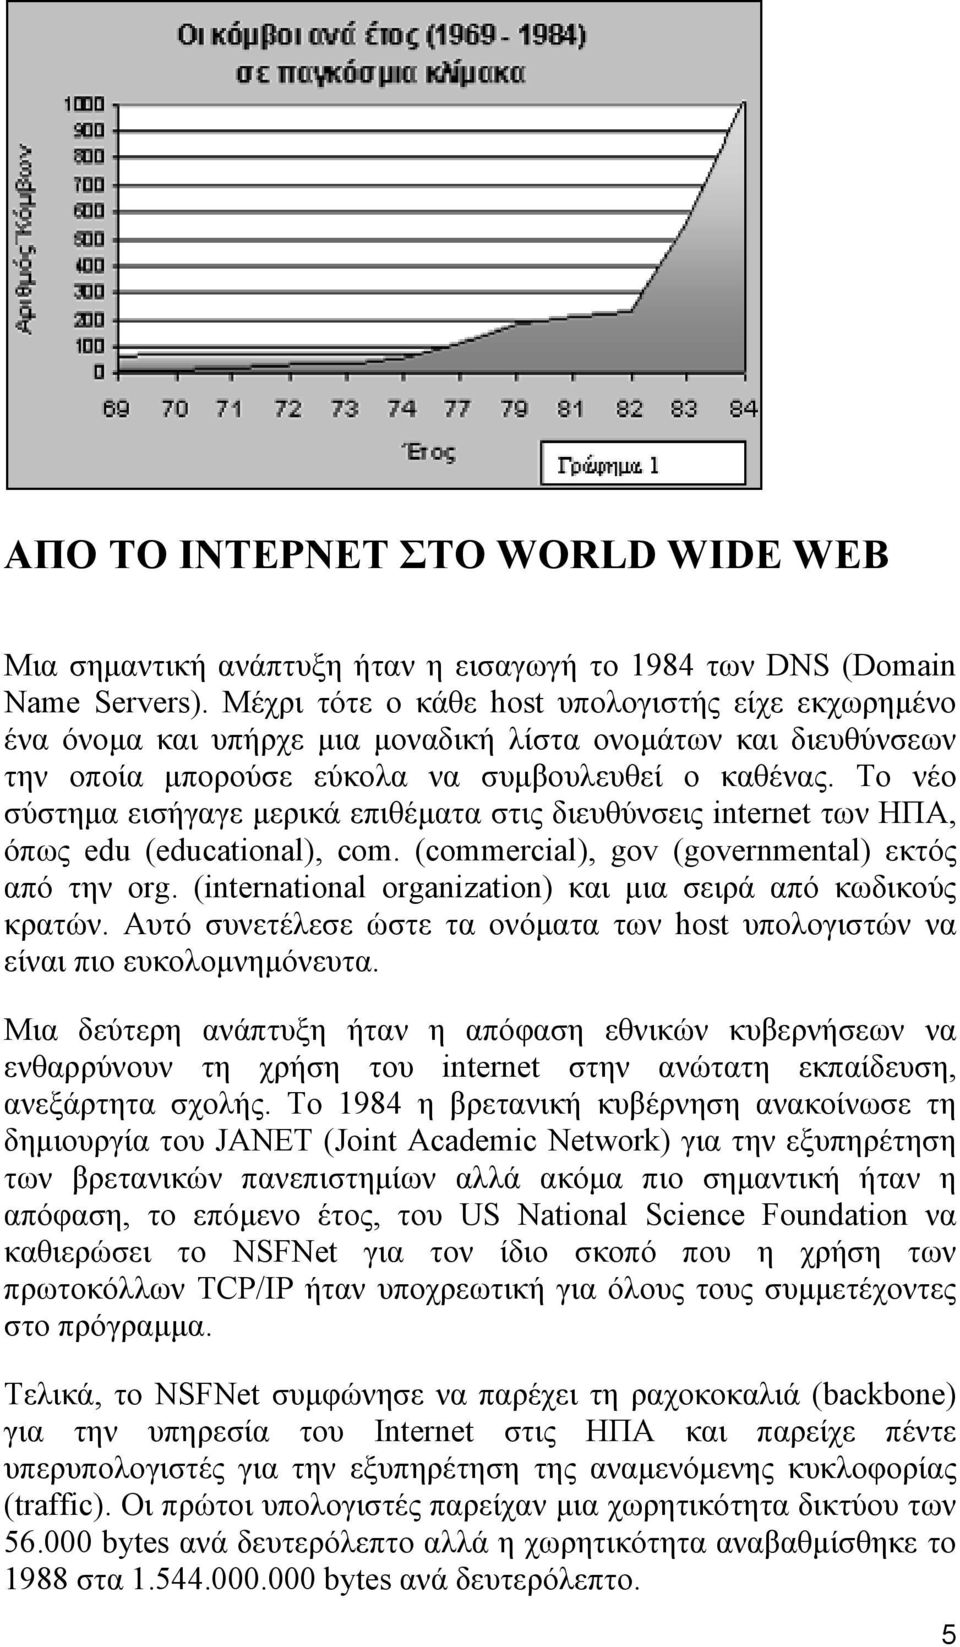 Το νέο σύστημα εισήγαγε μερικά επιθέματα στις διευθύνσεις internet των ΗΠΑ, όπως edu (educational), com. (commercial), gov (governmental) εκτός από την org.